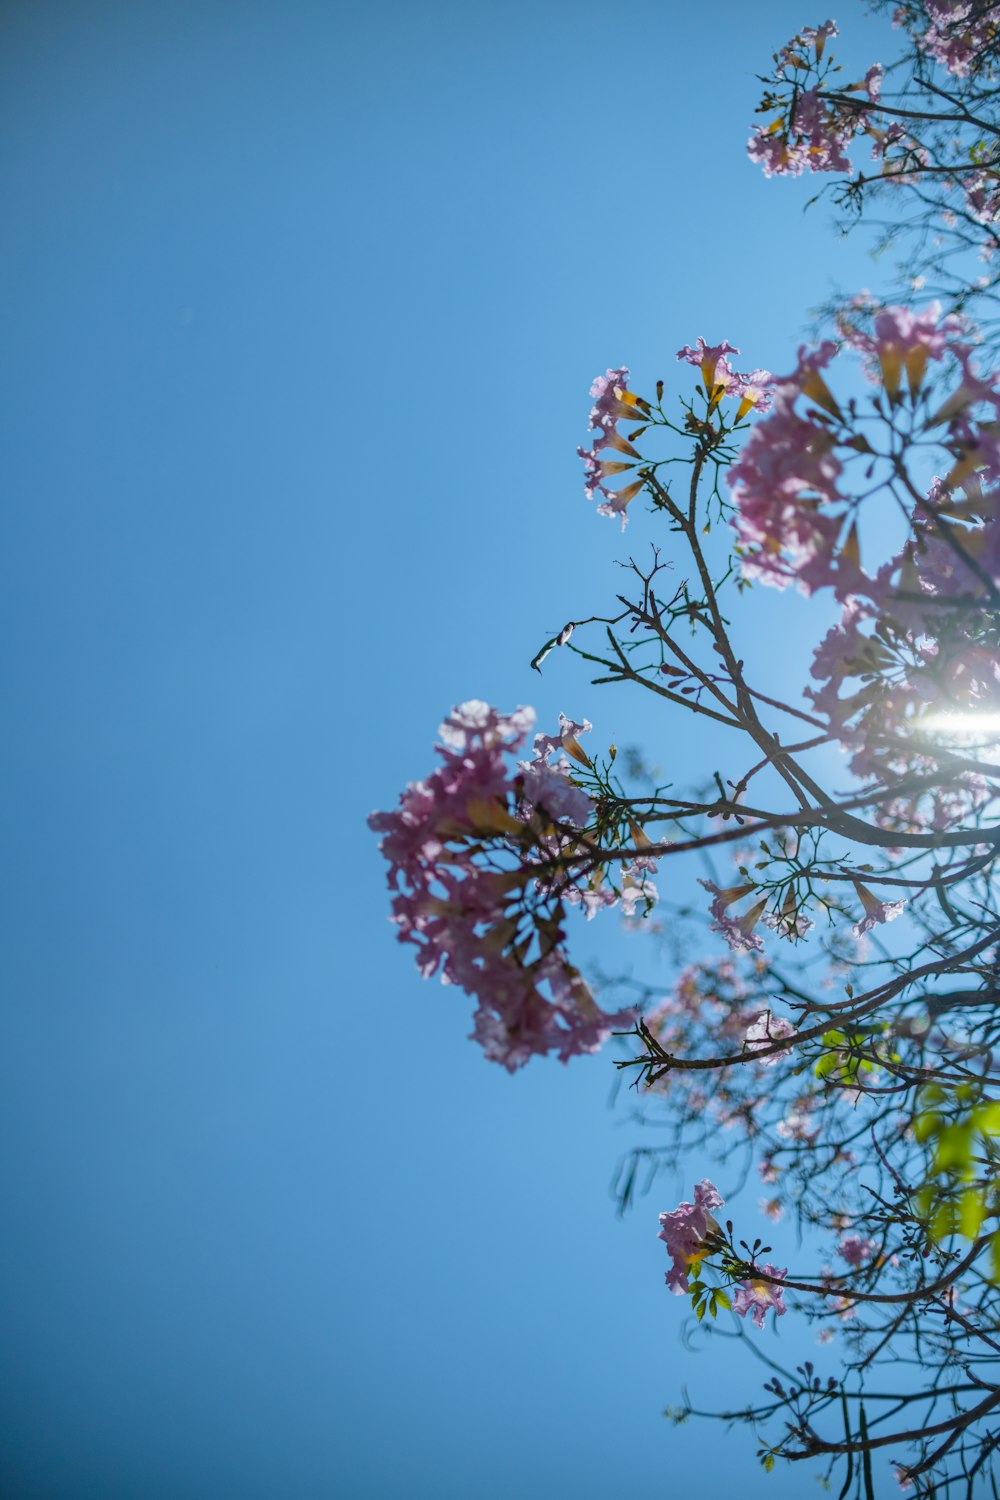 Il sole splende attraverso i rami di un albero in fiore